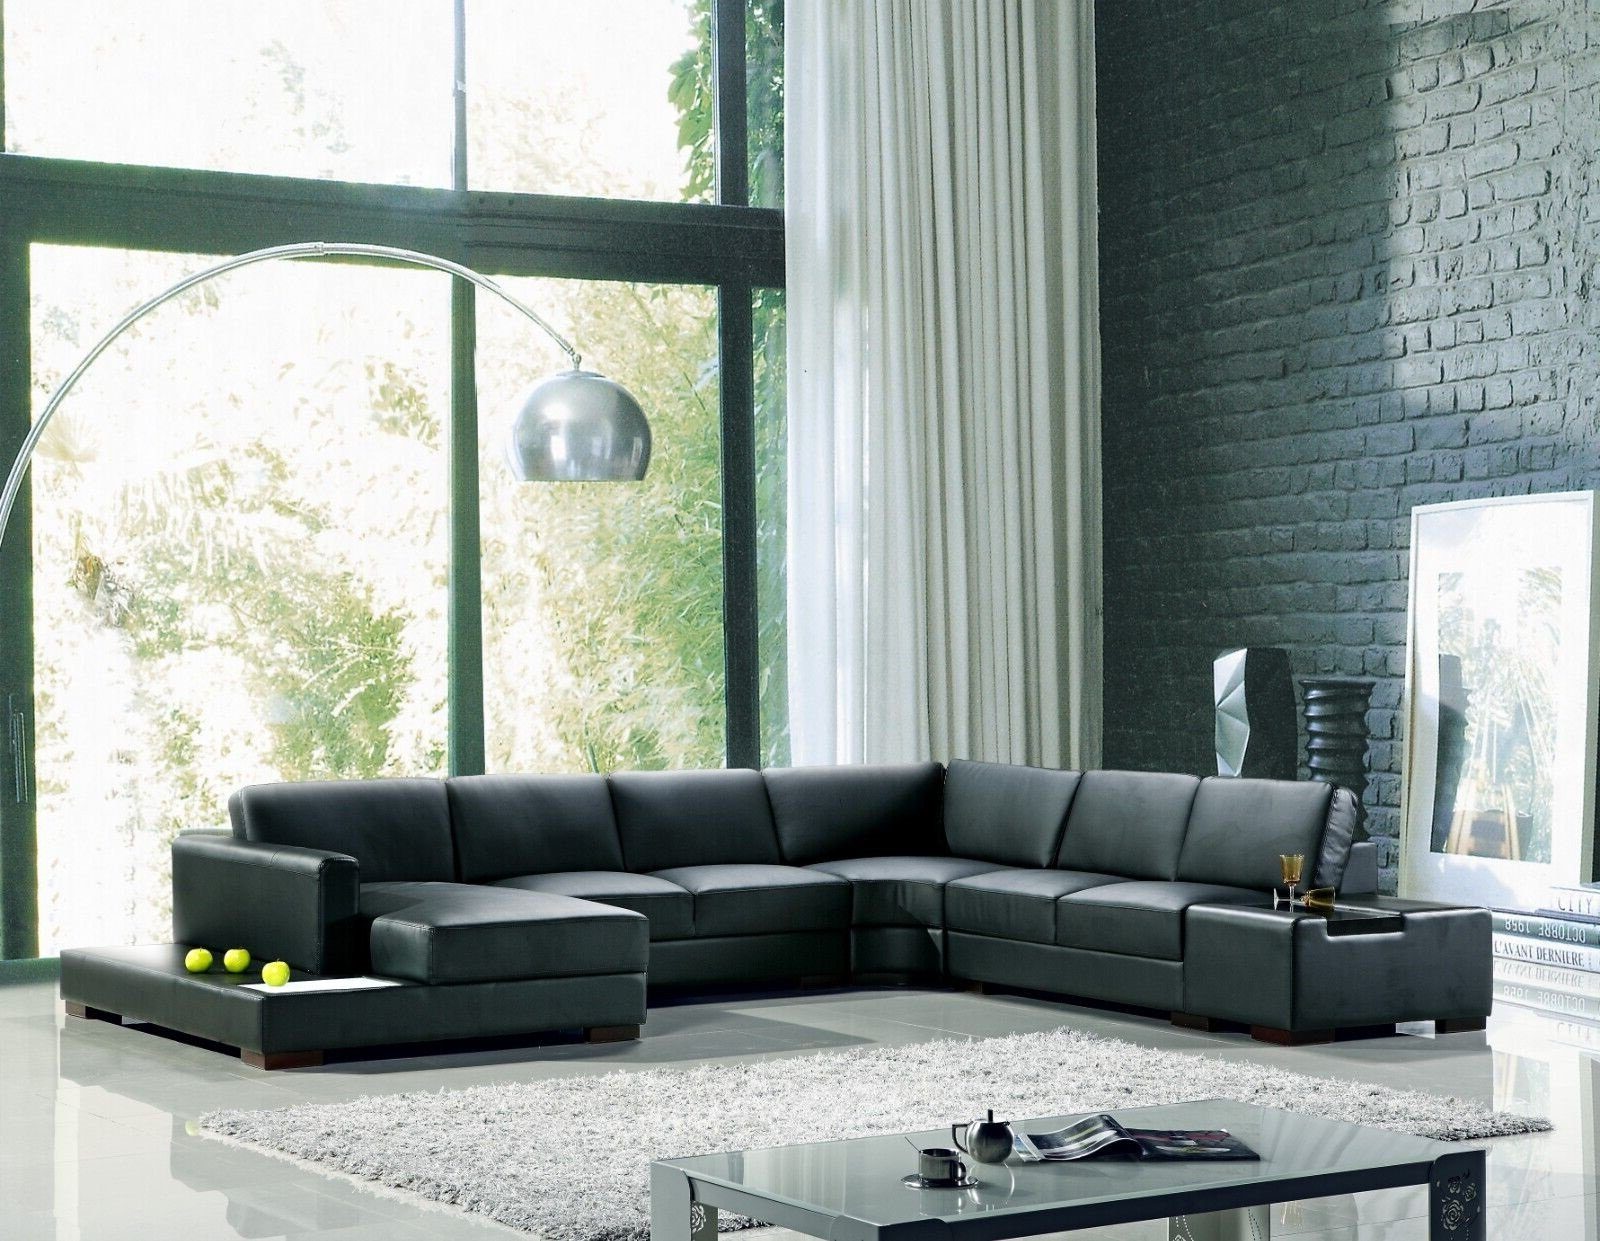 JVmoebel Ecksofa Ecksofa Schwarz U-Form Luxus Stil Modern Wohnzimmer Sofa SOFORT, 1 Teile, Made in Europa